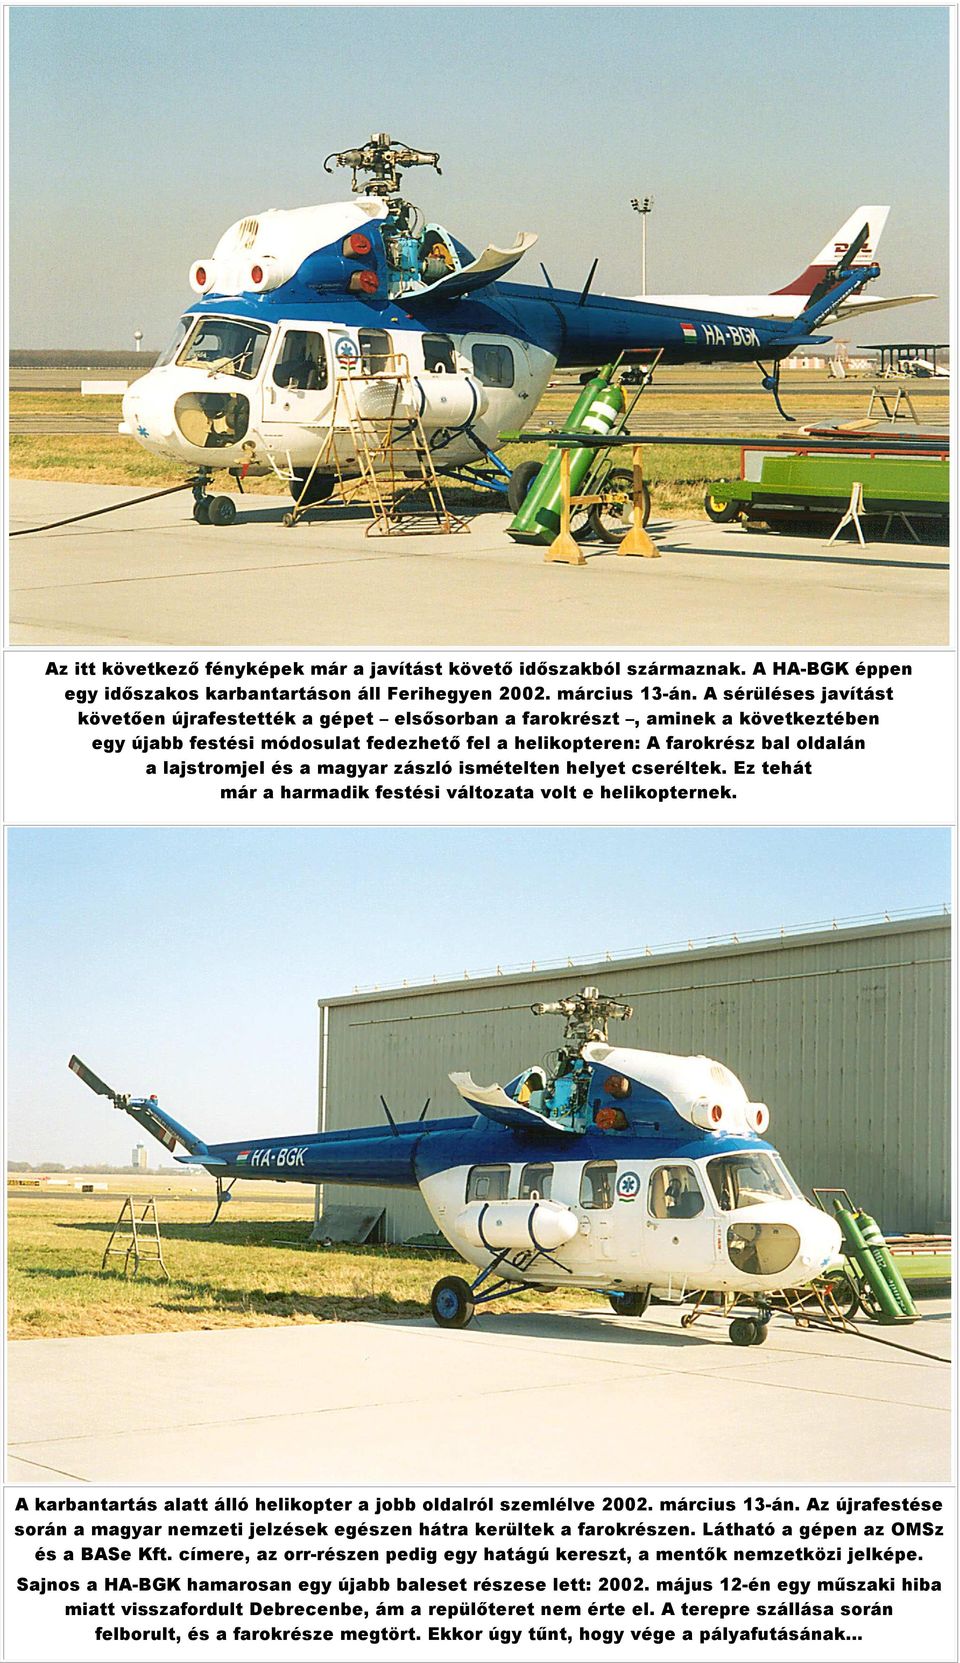 a magyar zászló ismételten helyet cseréltek. Ez tehát már a harmadik festési változata volt e helikopternek. A karbantartás alatt álló helikopter a jobb oldalról szemlélve 2002. március 13-án.